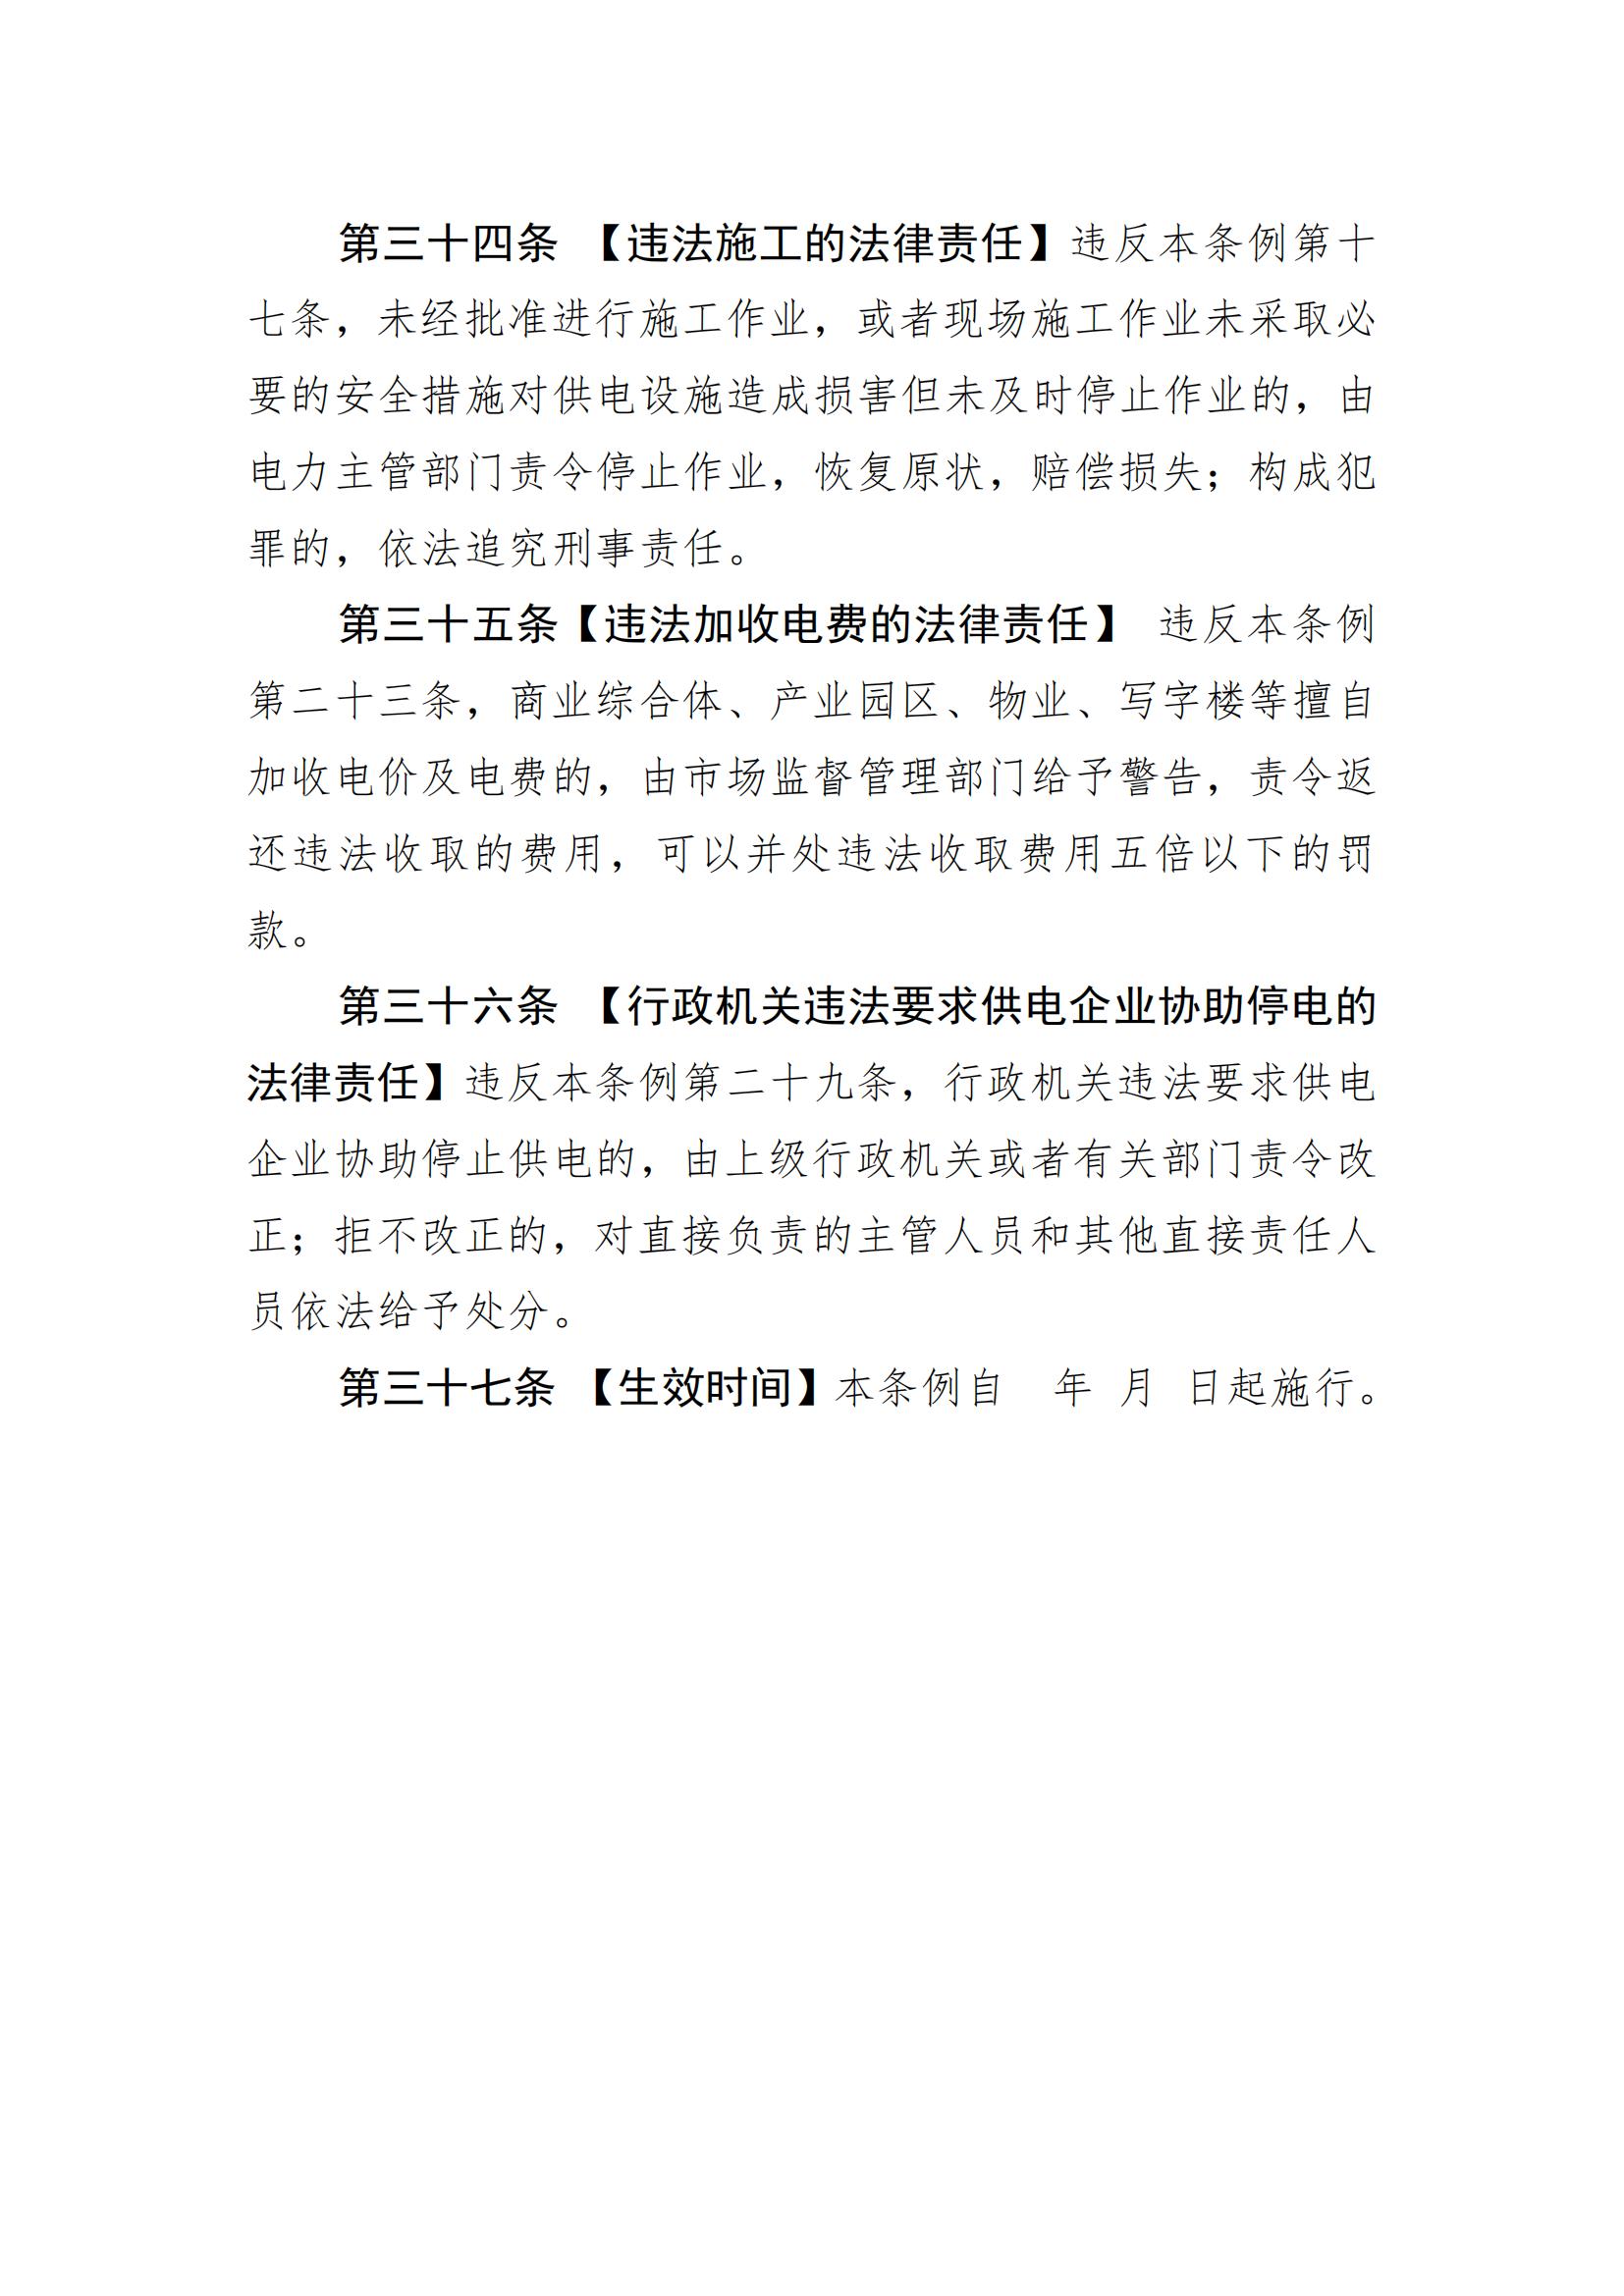 惠州市供用电条例（草案）（征求意见稿）_15.jpg